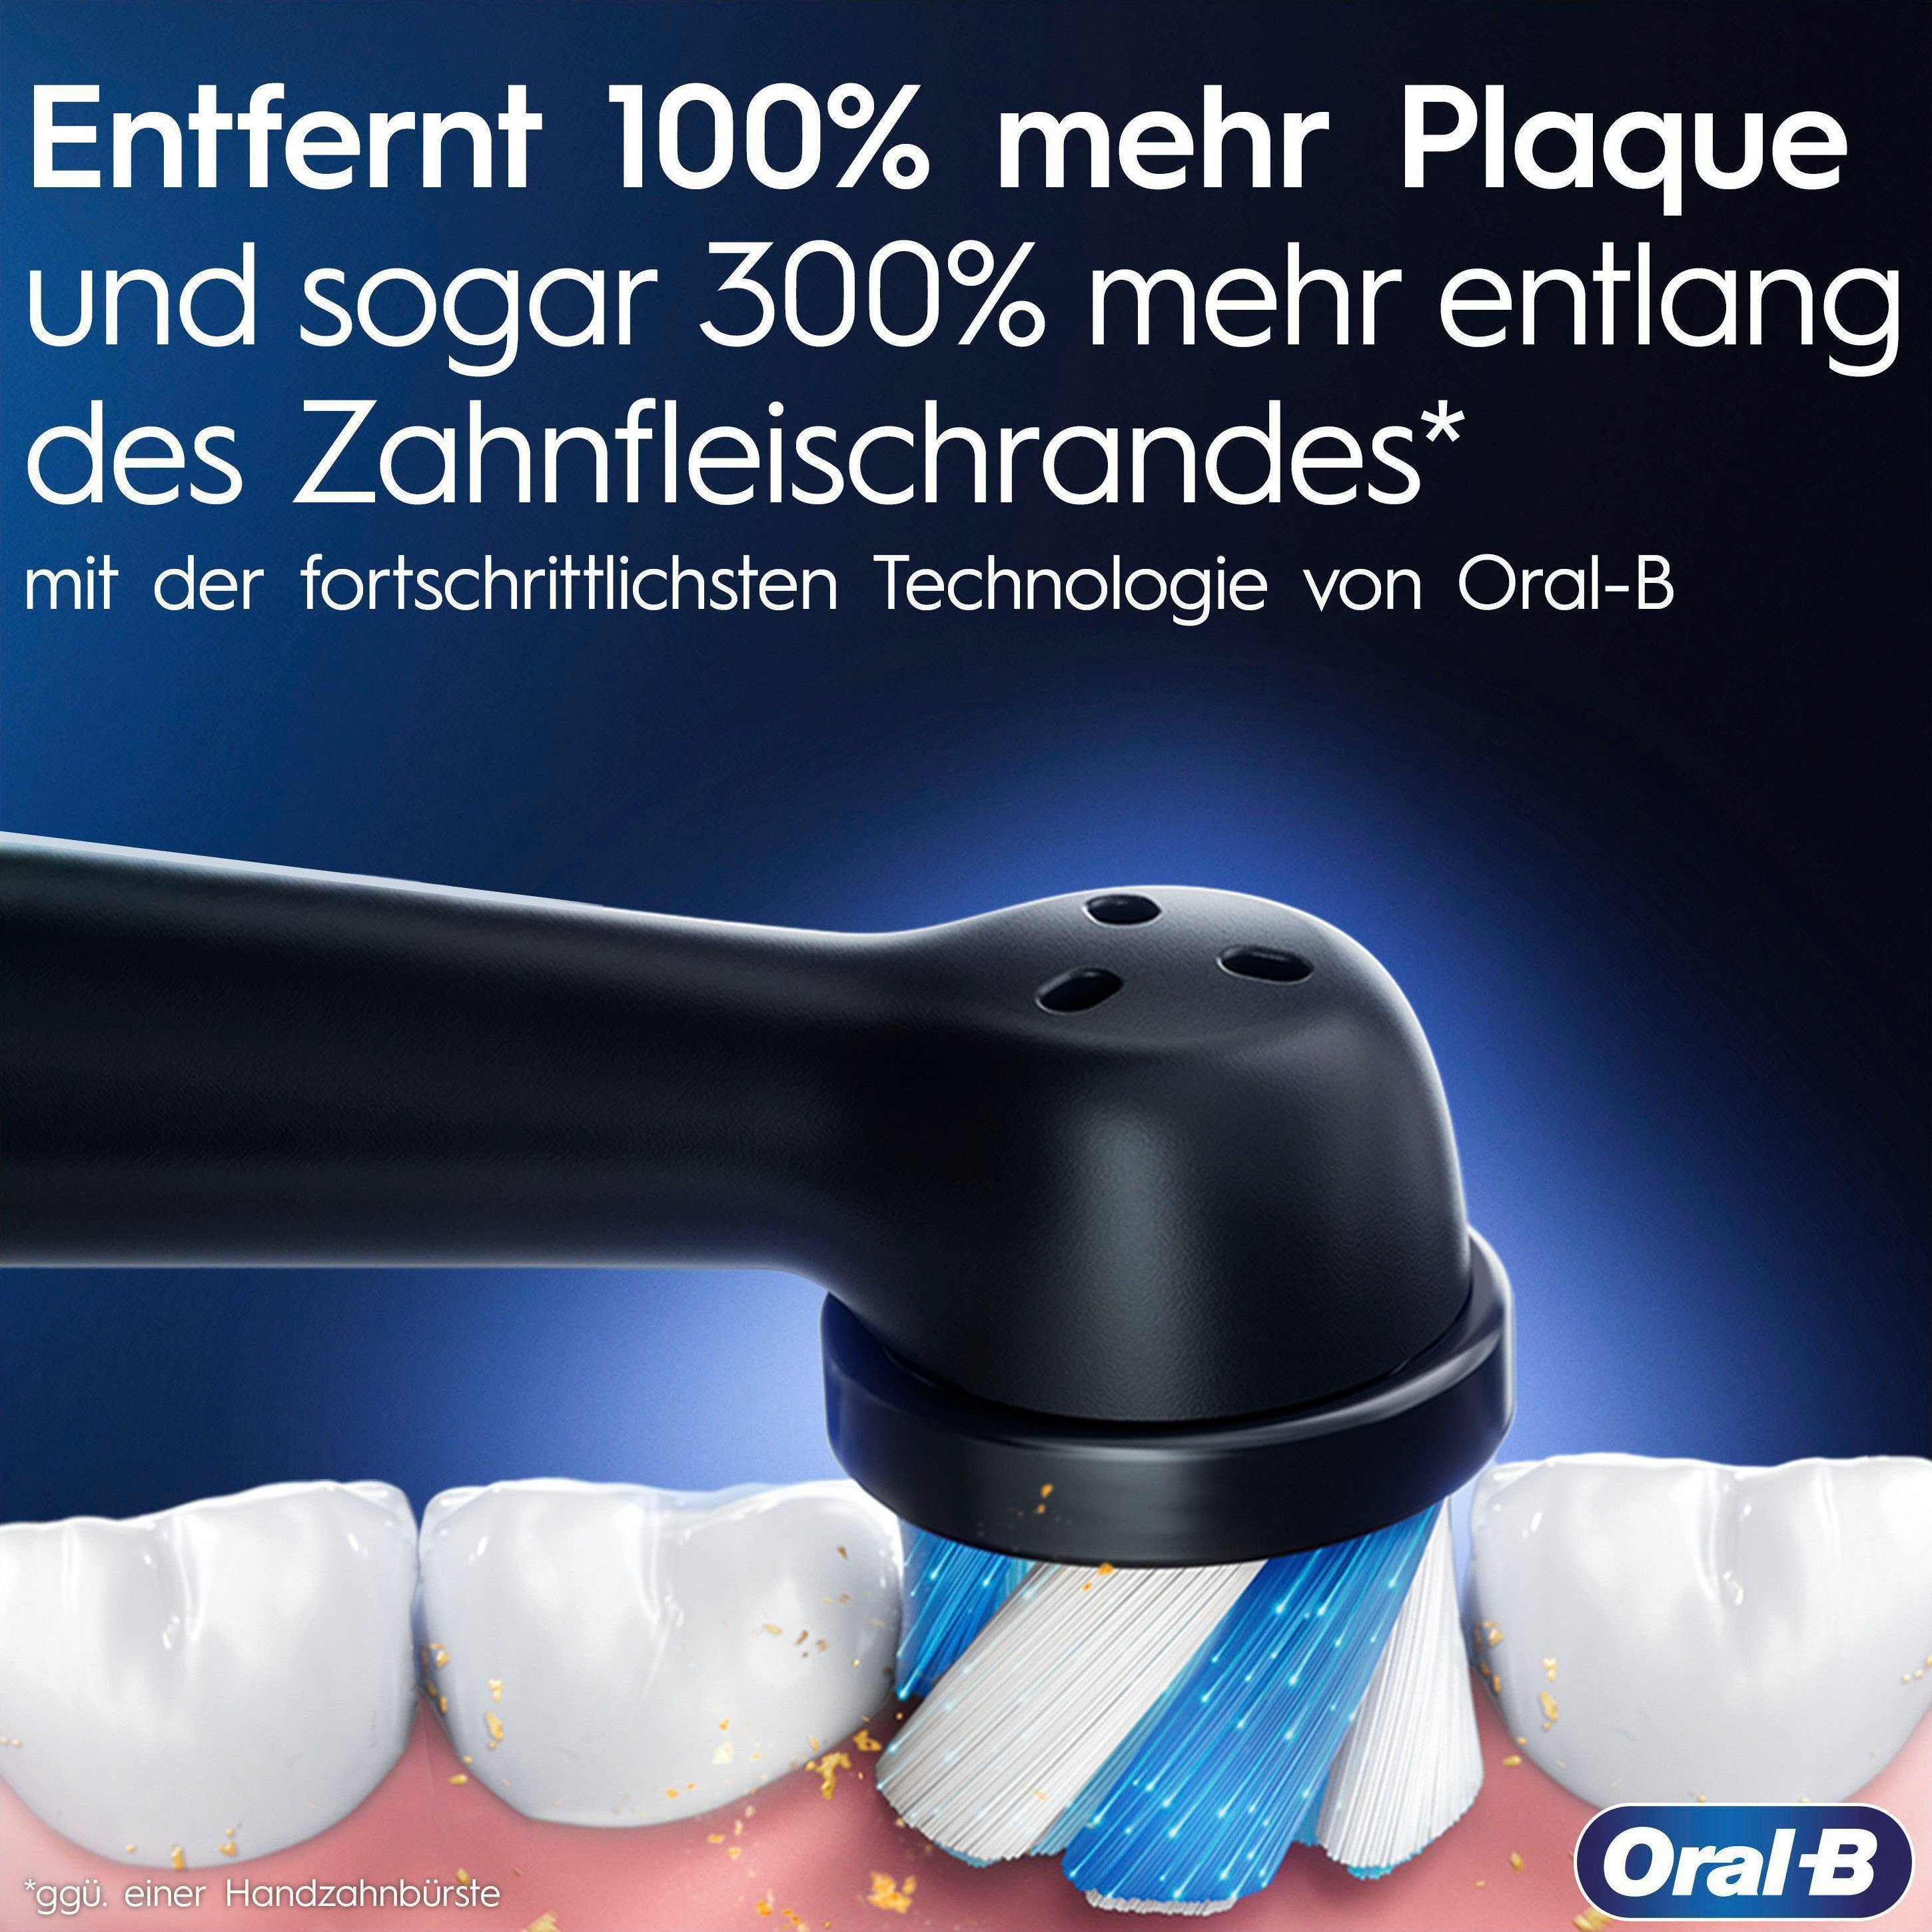 Oral-B Elektrische Zahnbürste iO 9, Magnet-Technologie, Farbdisplay & Putzmodi, Rose mit St., Quartz Aufsteckbürsten: 2 7 Lade-Reiseetui